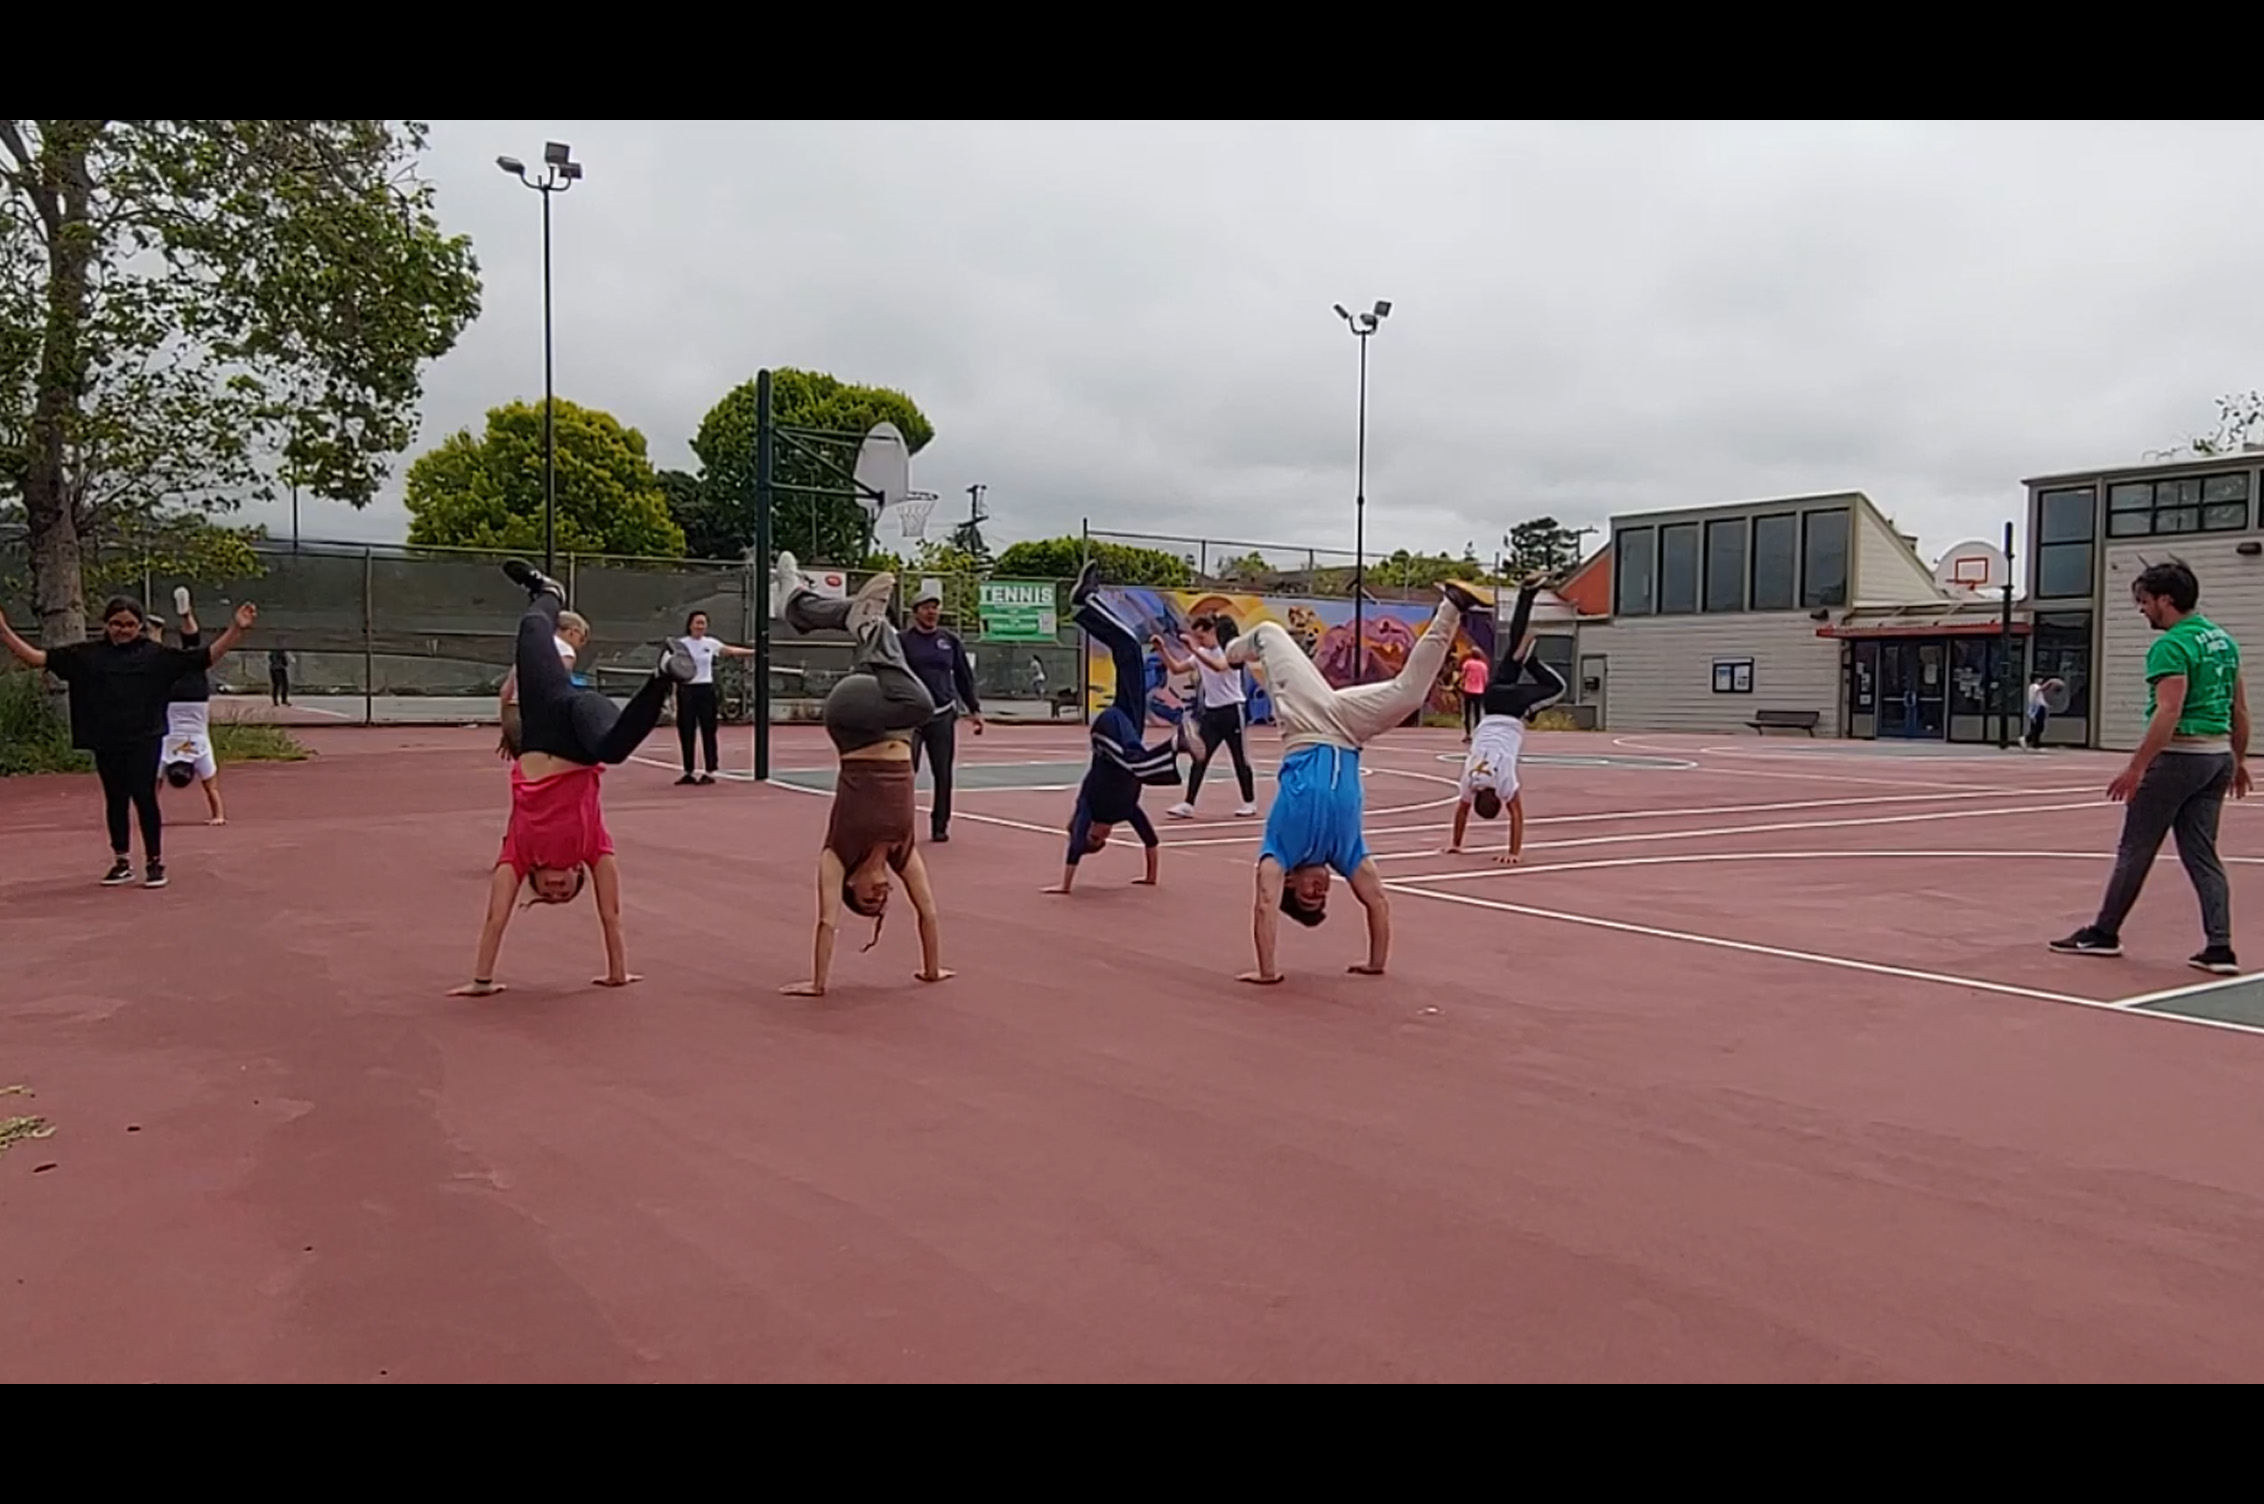 Park capoeira class!